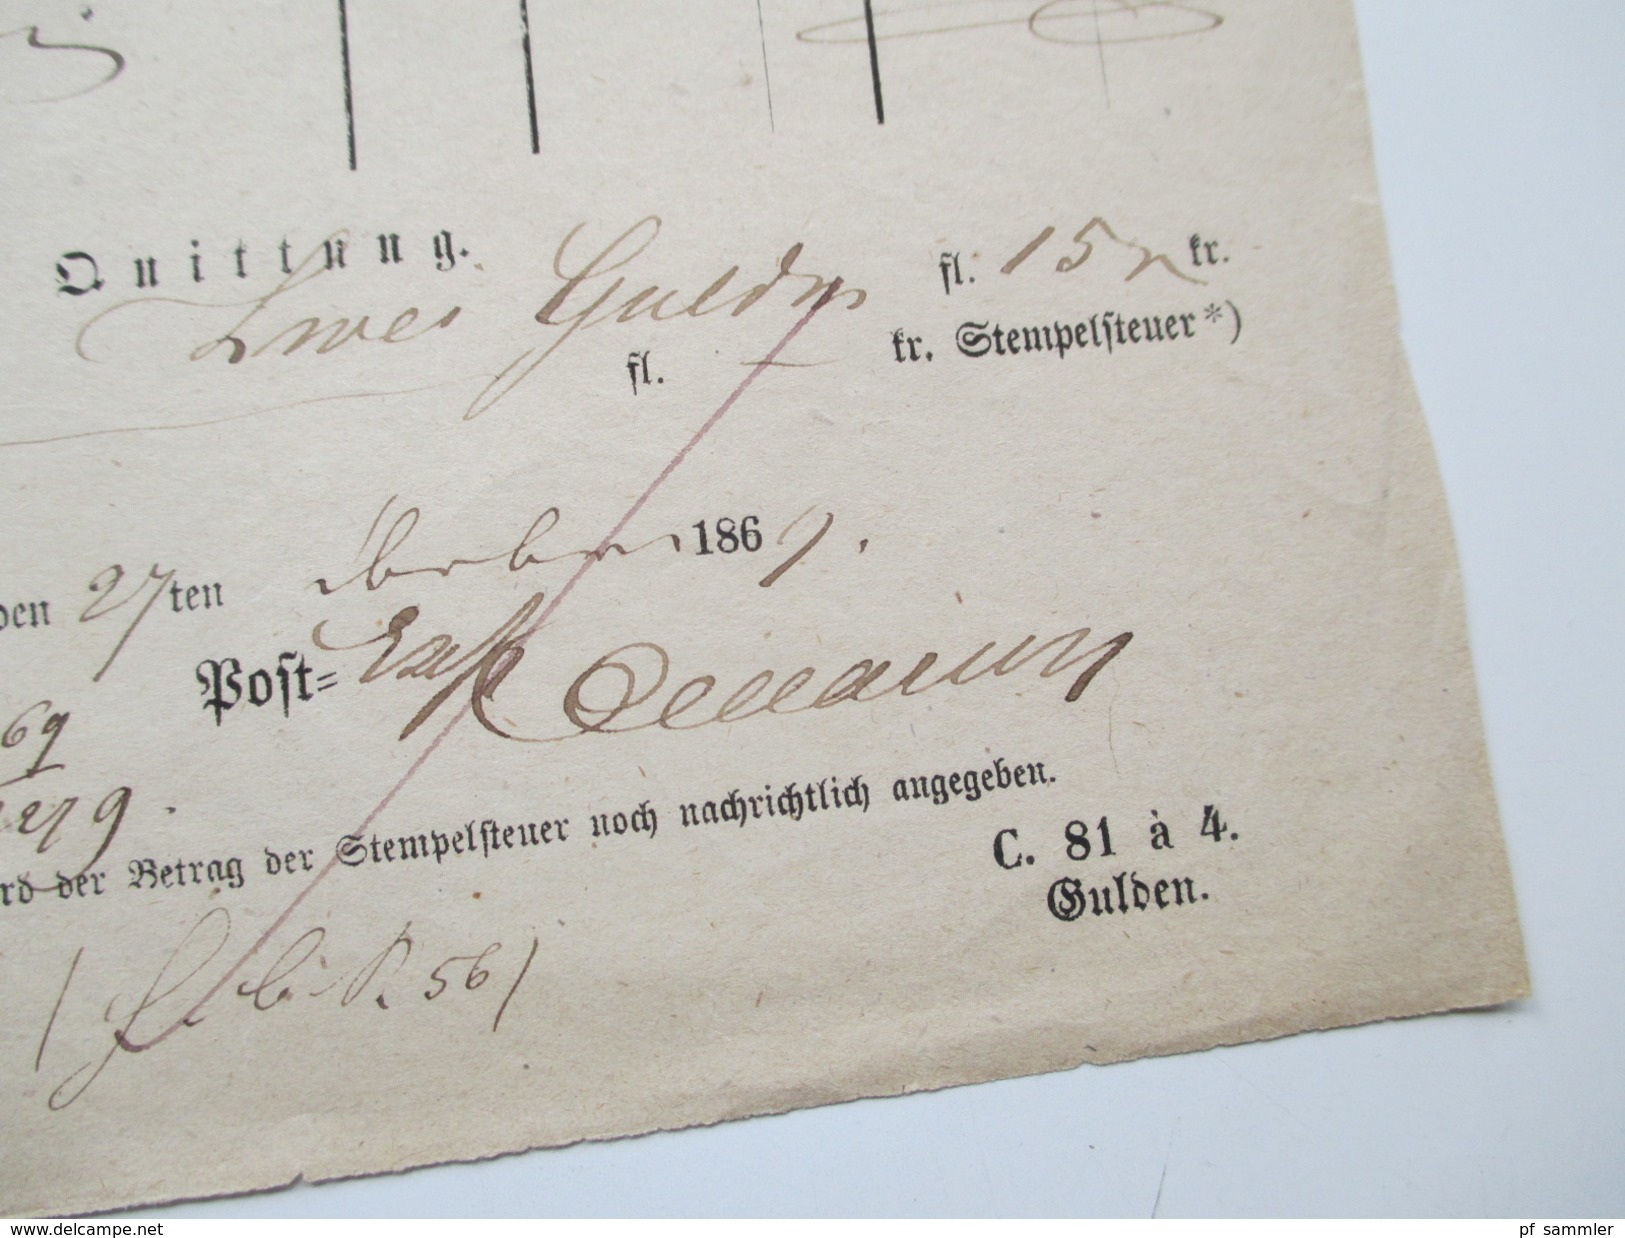 Altdeutschland Thurn und Taxis 1869 Quittung Abonnement einer Zeitung. Stempelsteuer. Fingerhutstempel K1 Schotten